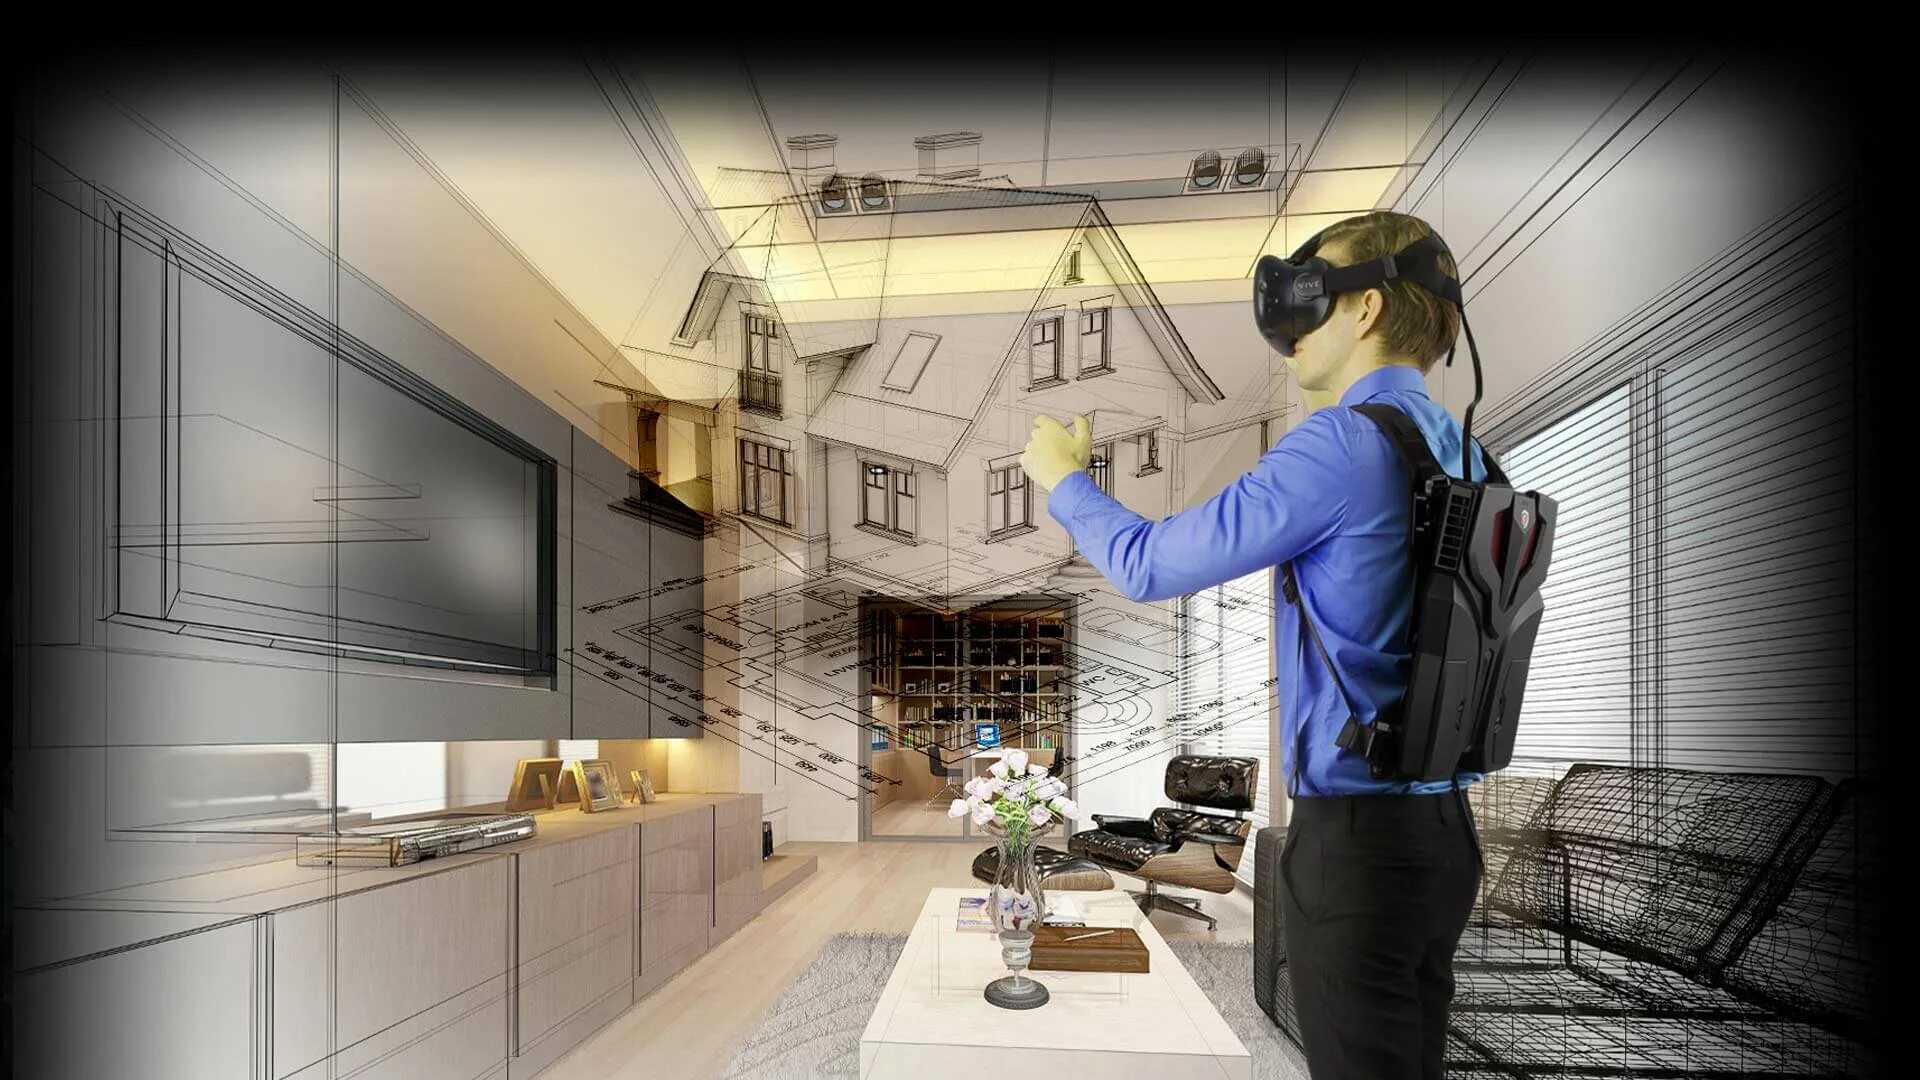 Vr cr. Виртуальная реальность в архитектуре. Архитектор виртуальной реальности. VR технологии в интерьере. Архитектор виртуальных миров.